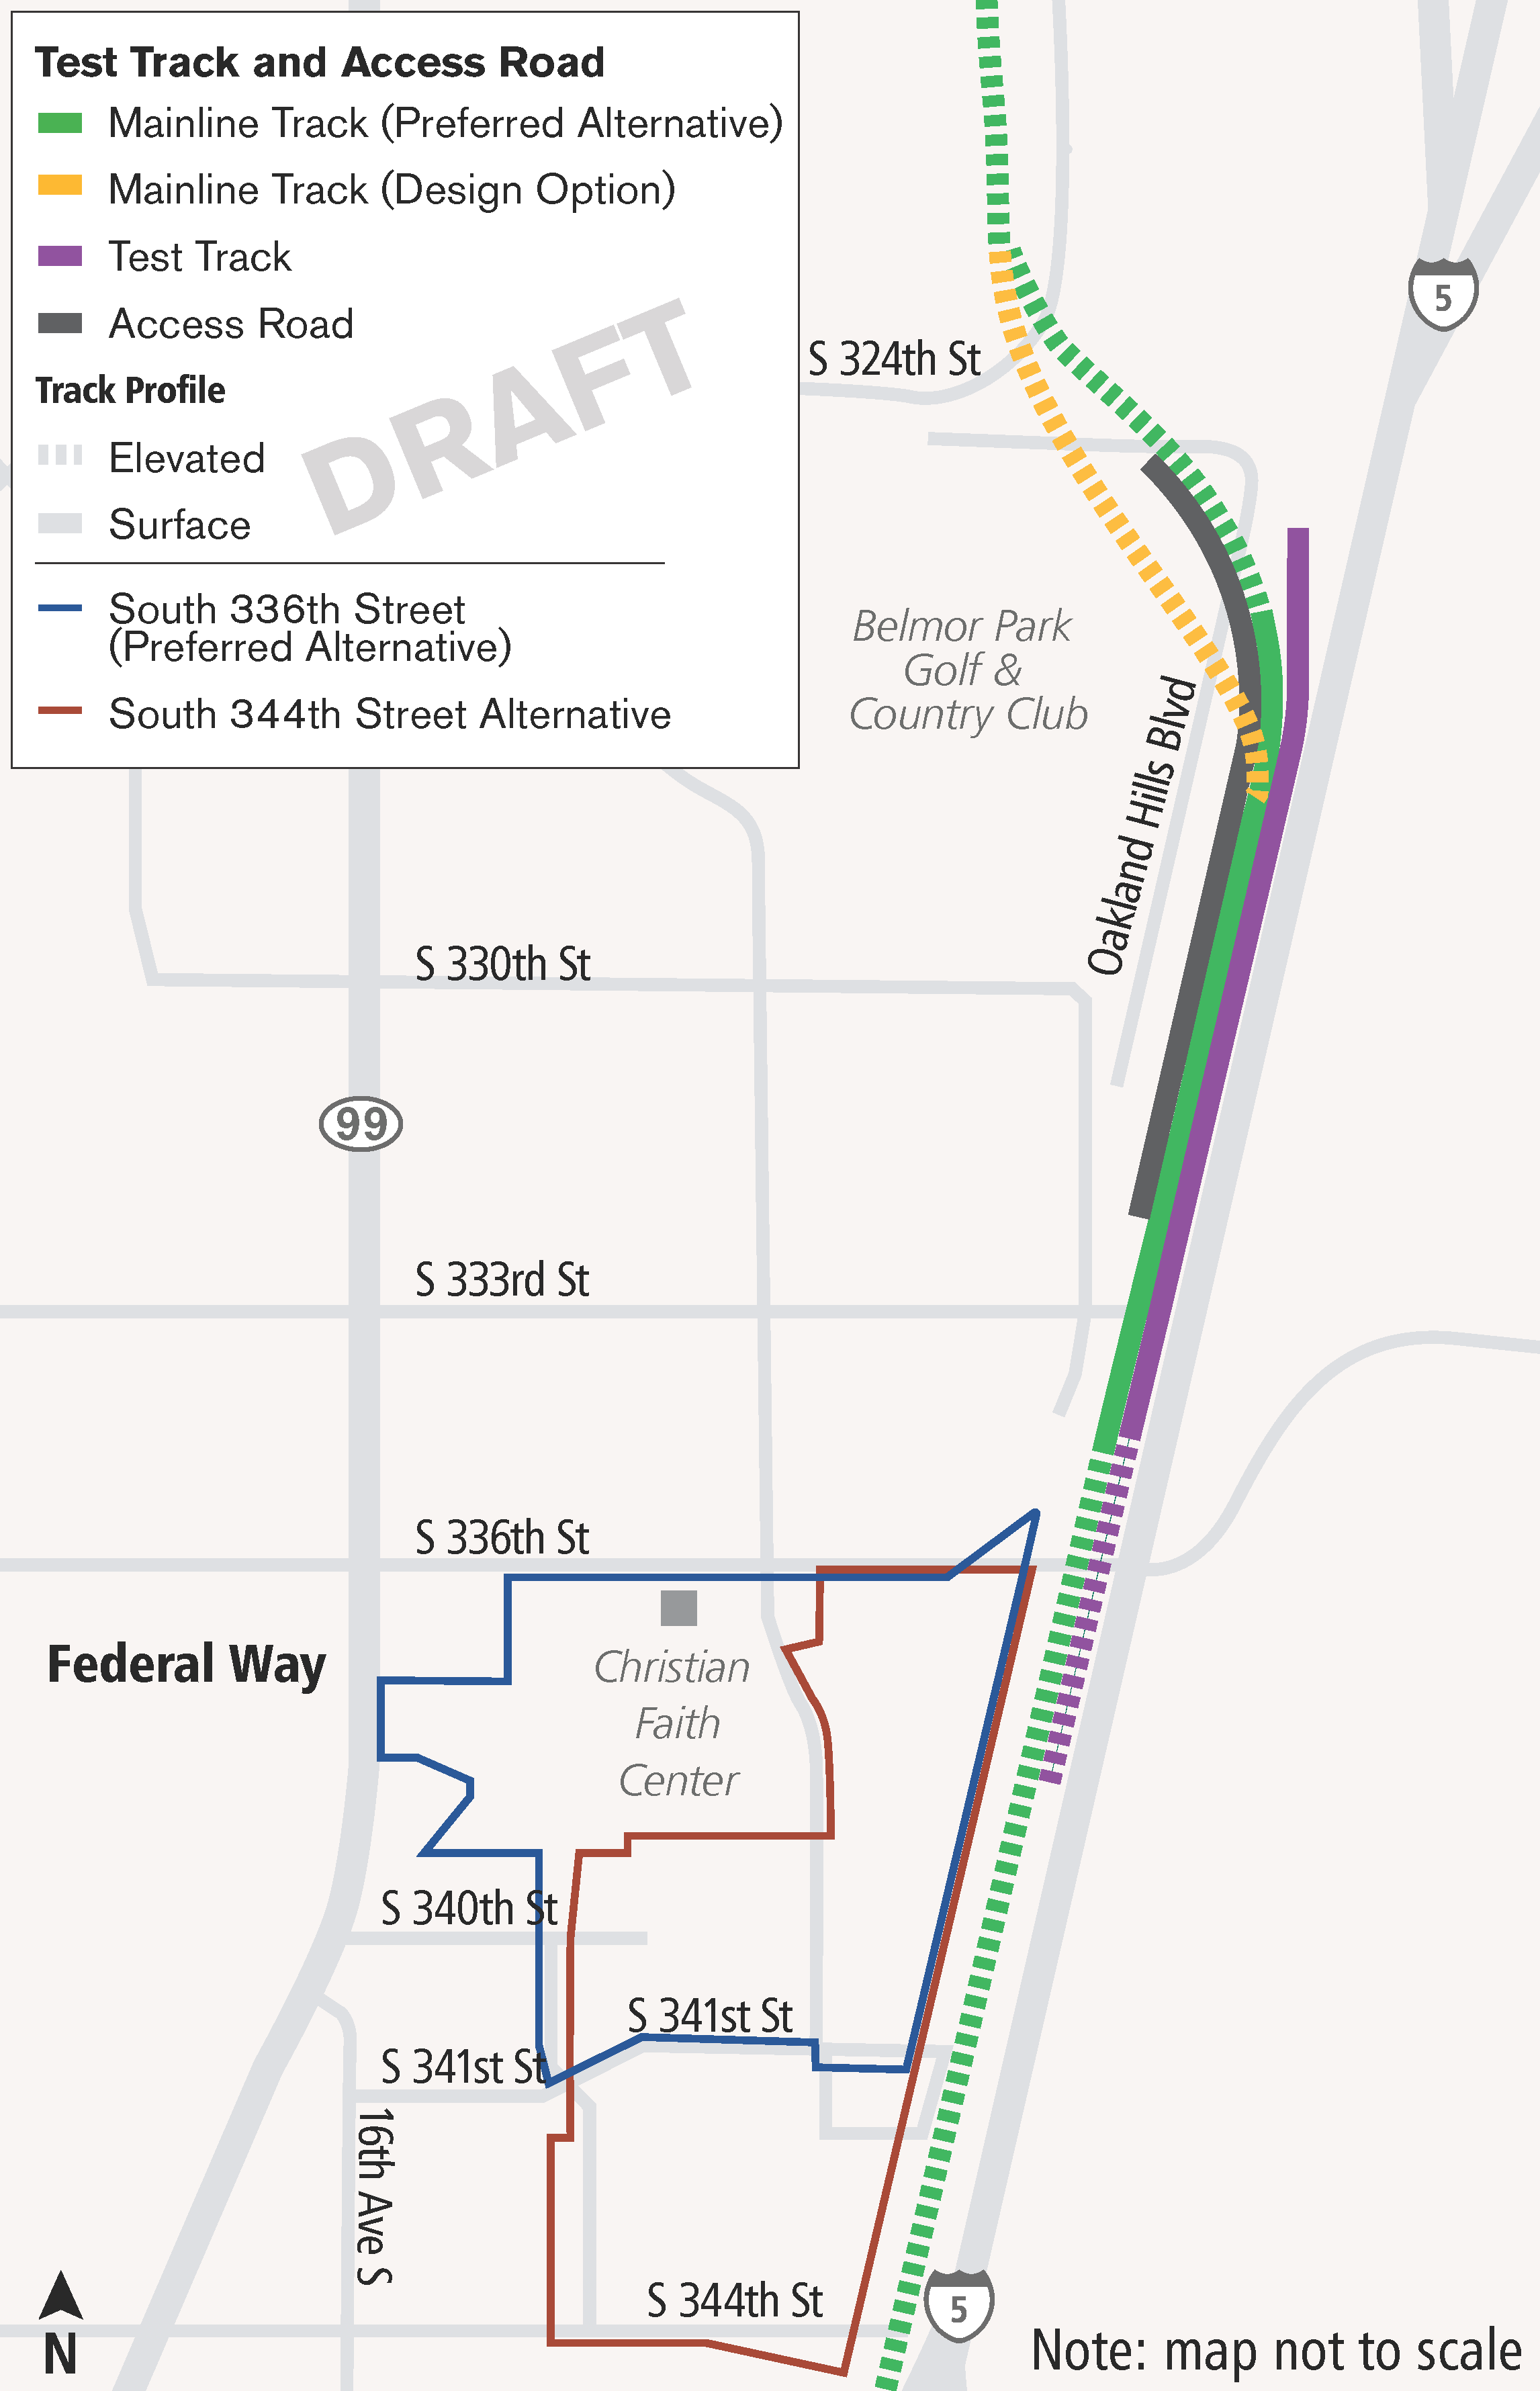 Un mapa de la vía de pruebas y vías de acceso asociadas con la alternativa preferida y la alternativa de South 344th Street en Federal Way.